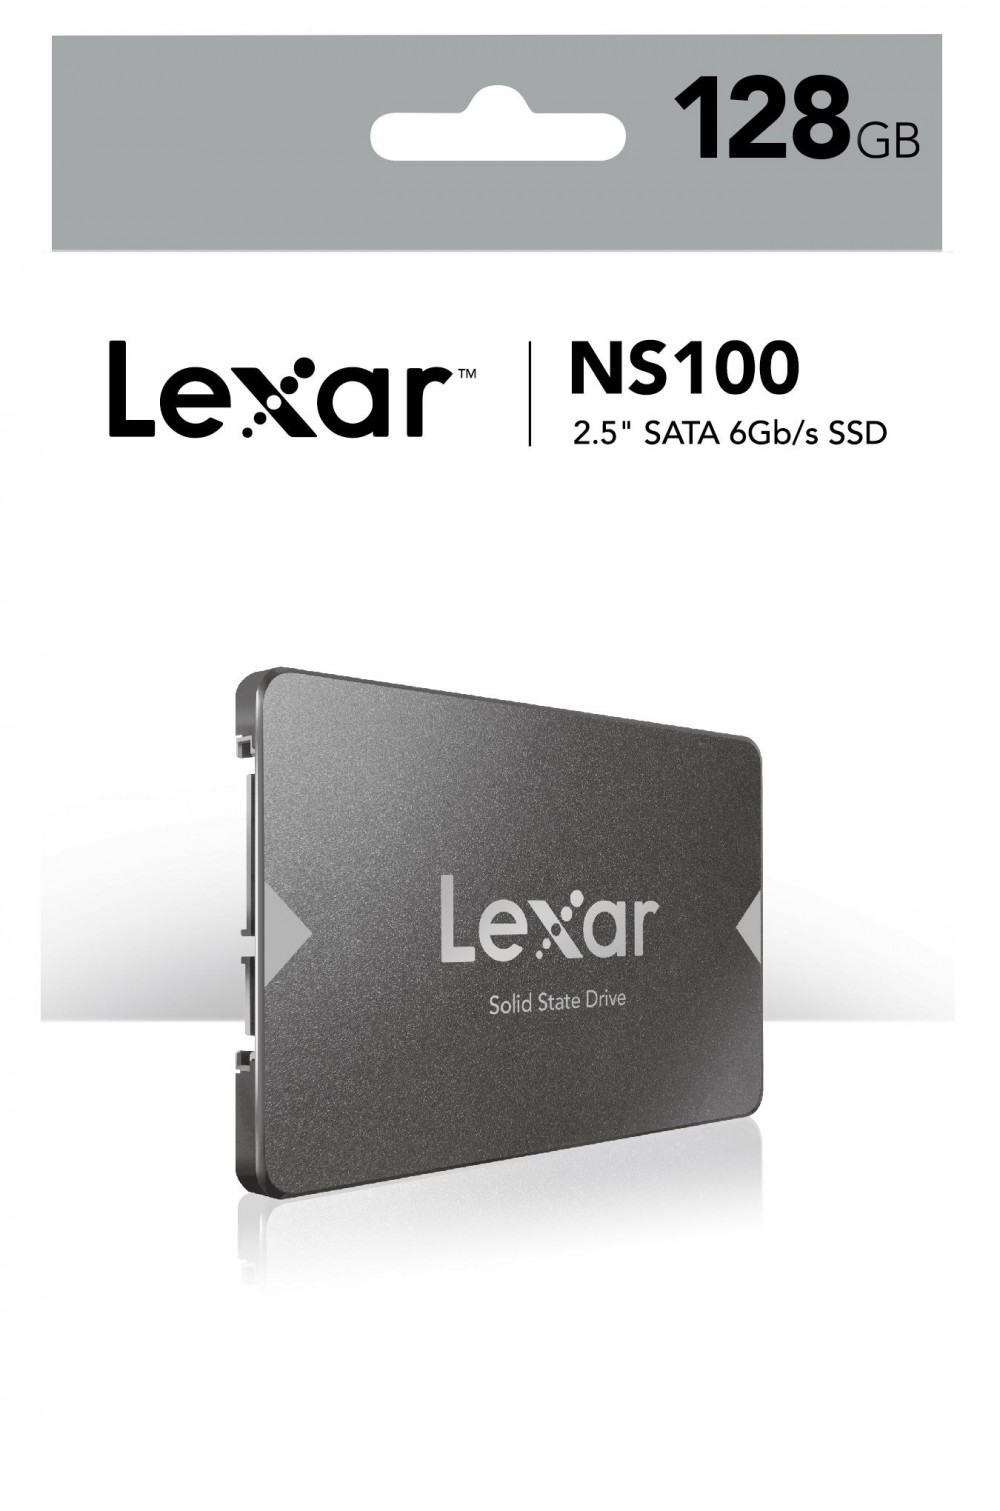 Ổ Cứng SSD Lexar LNS100 Sothing, dung lượng 128gb-256gb, hỗ trợ hệ thống máy tính chạy nhanh hơn, phù hợp nhiều loại máy tính- Hàng chính hãng